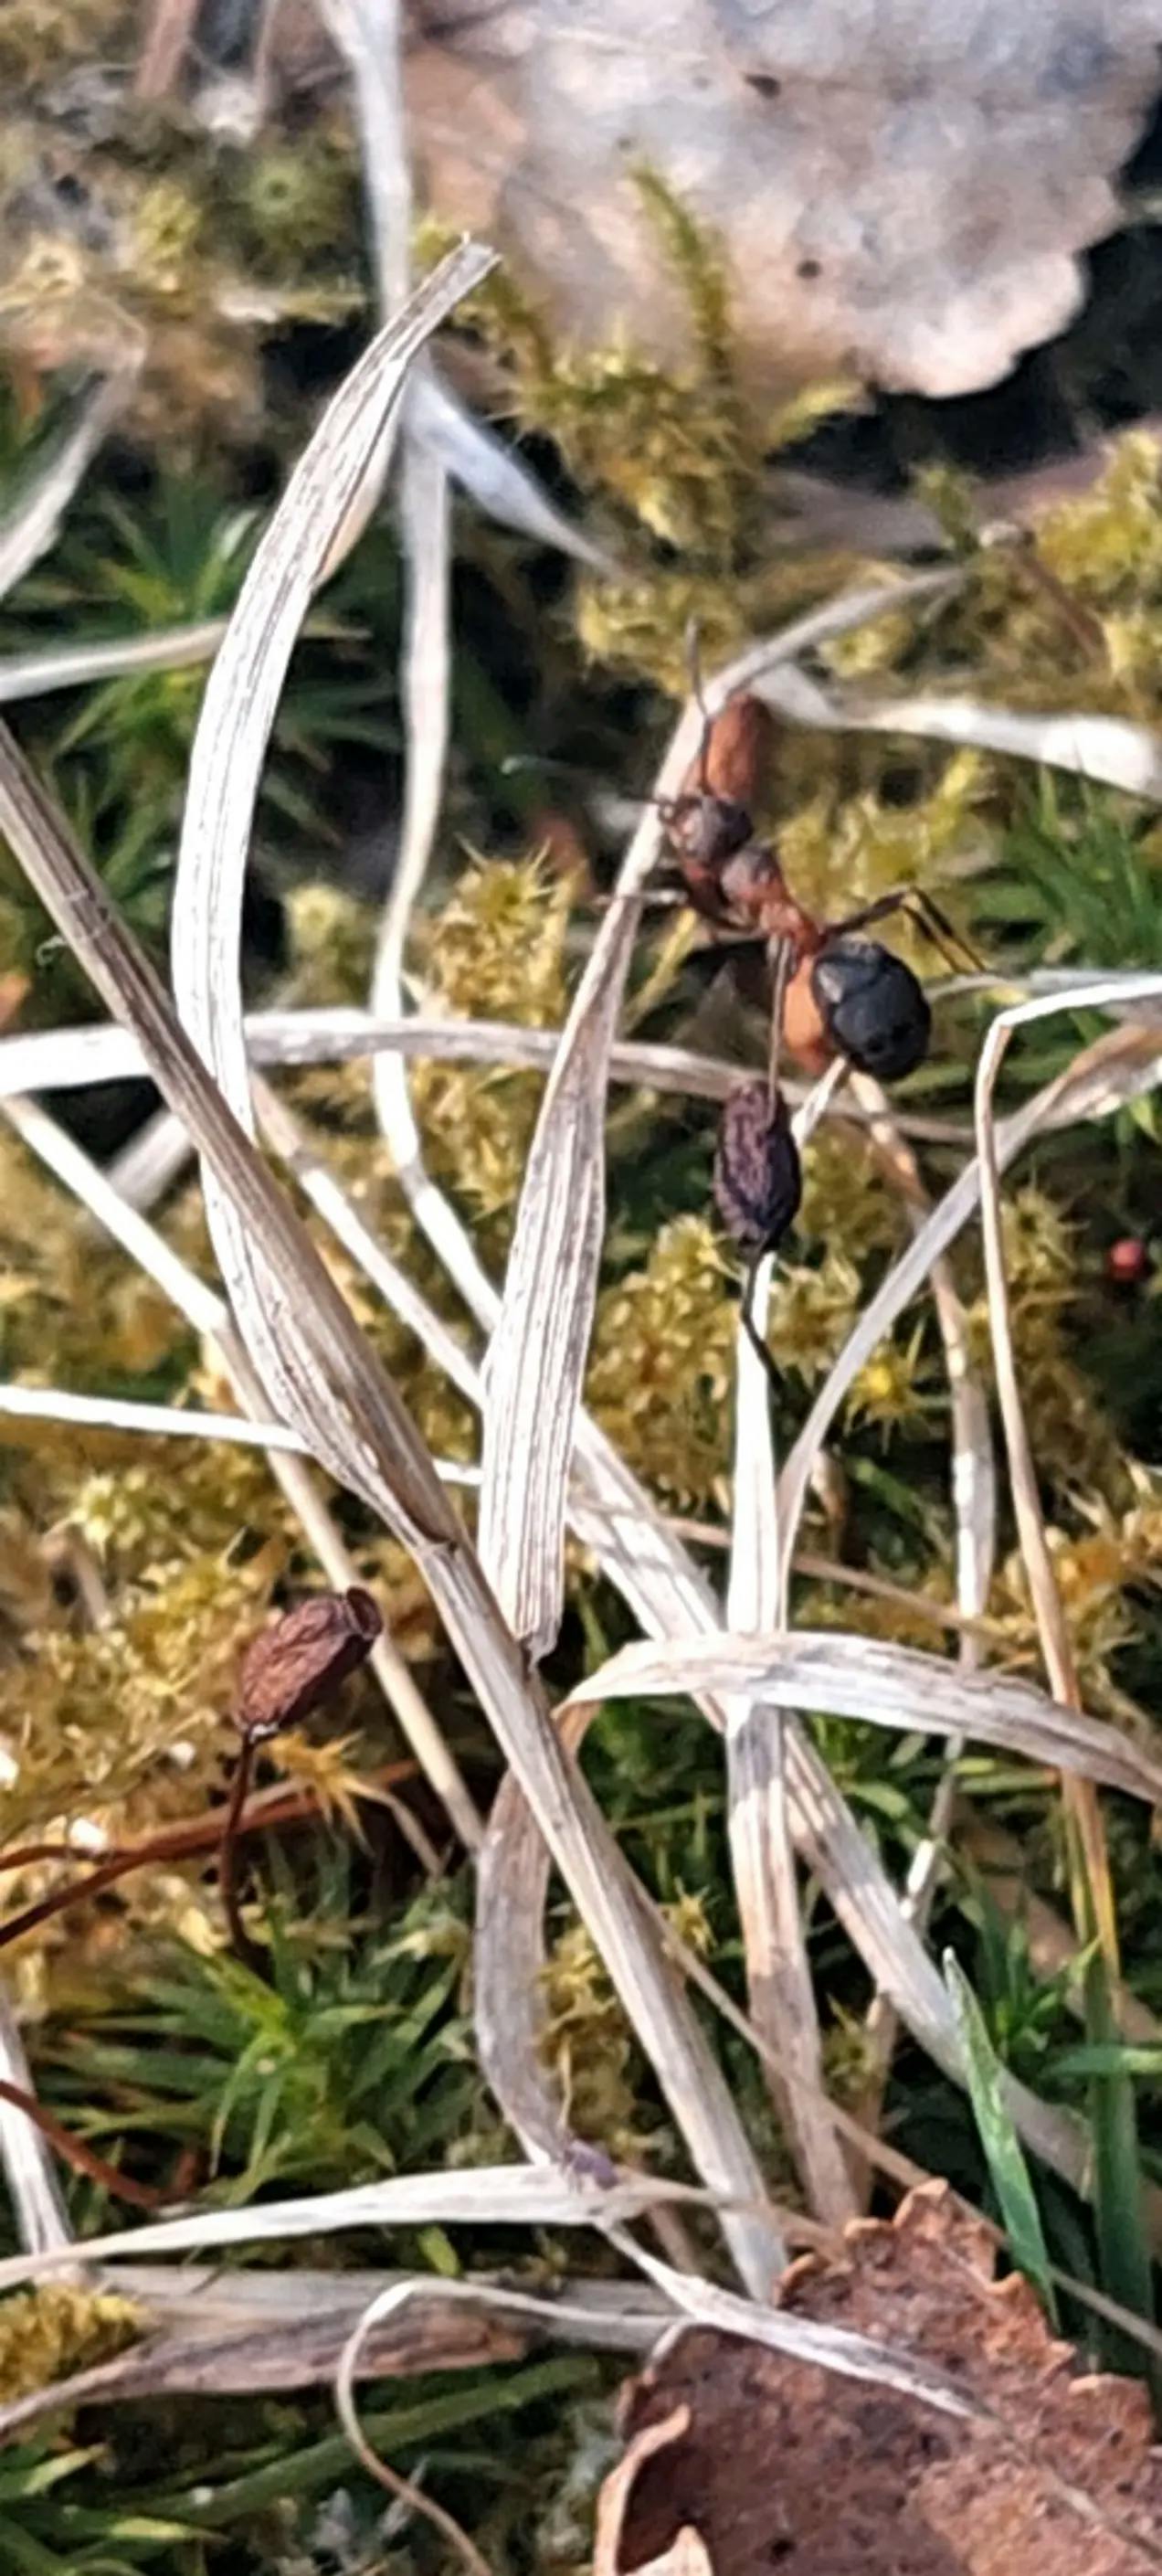 Maur som klatrer på et strå. Skogbunn med mose og blader. Fotografi.